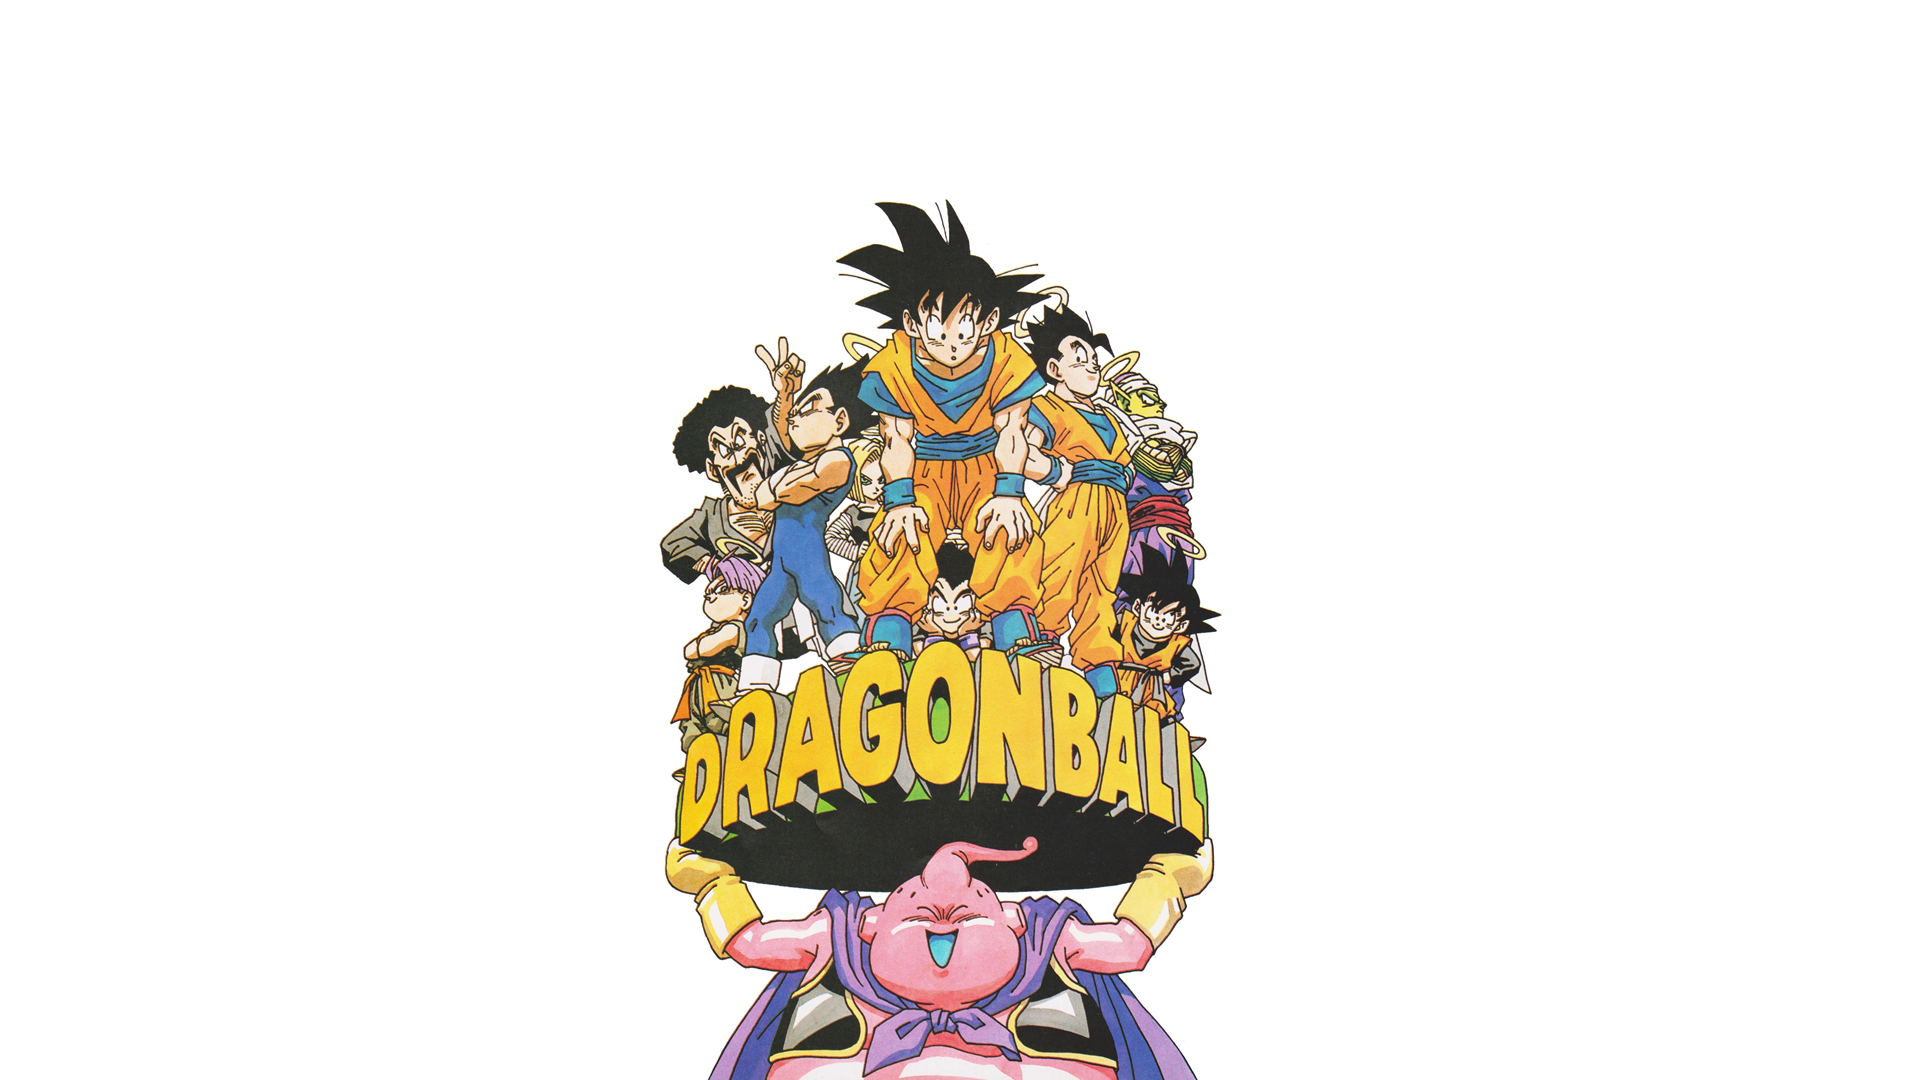 Dragon Ball Dragon Ball Z Son Goku Vegeta Piccolo Son Goten Trunks Character Trunks Majin Buu Krilli 1920x1080